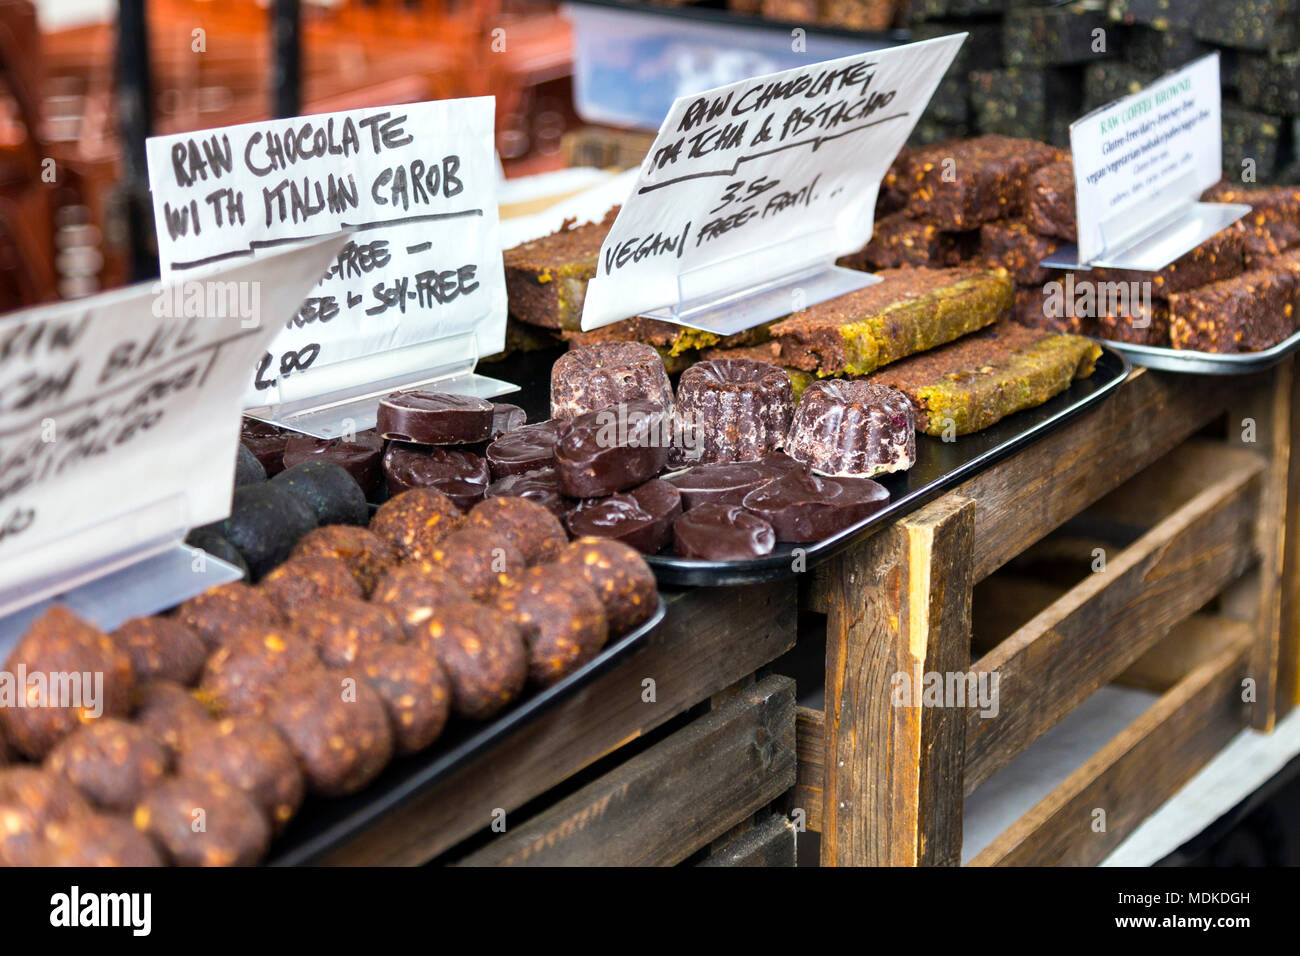 Raw Vegan golosinas y postres en el mercado alimentario de Brick Lane, Londres, Reino Unido. Foto de stock